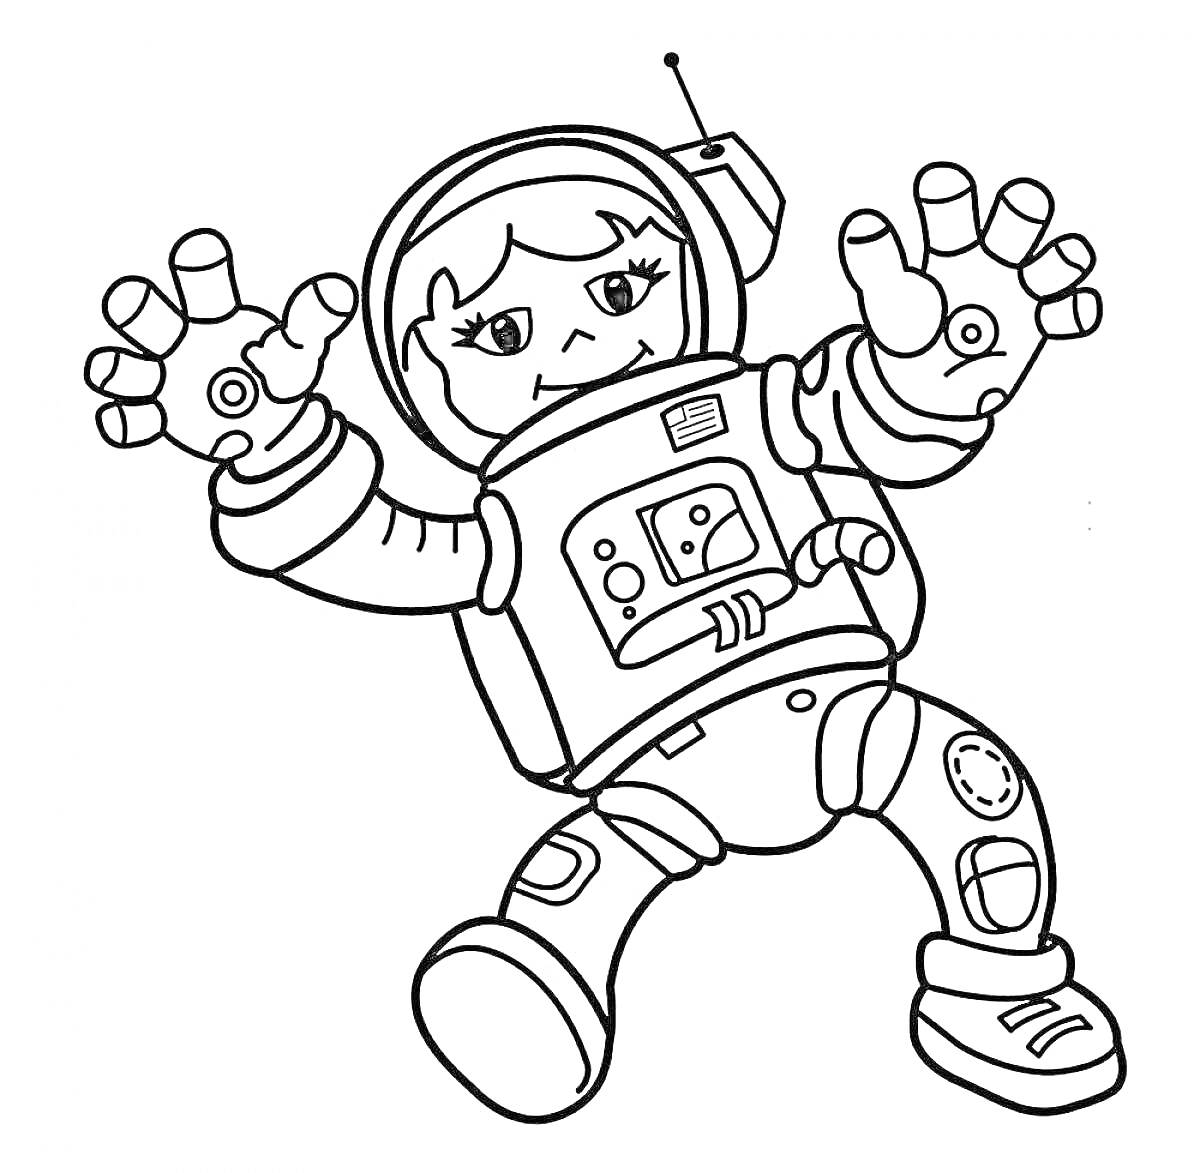  Космонавт в скафандре с панелью управления на груди